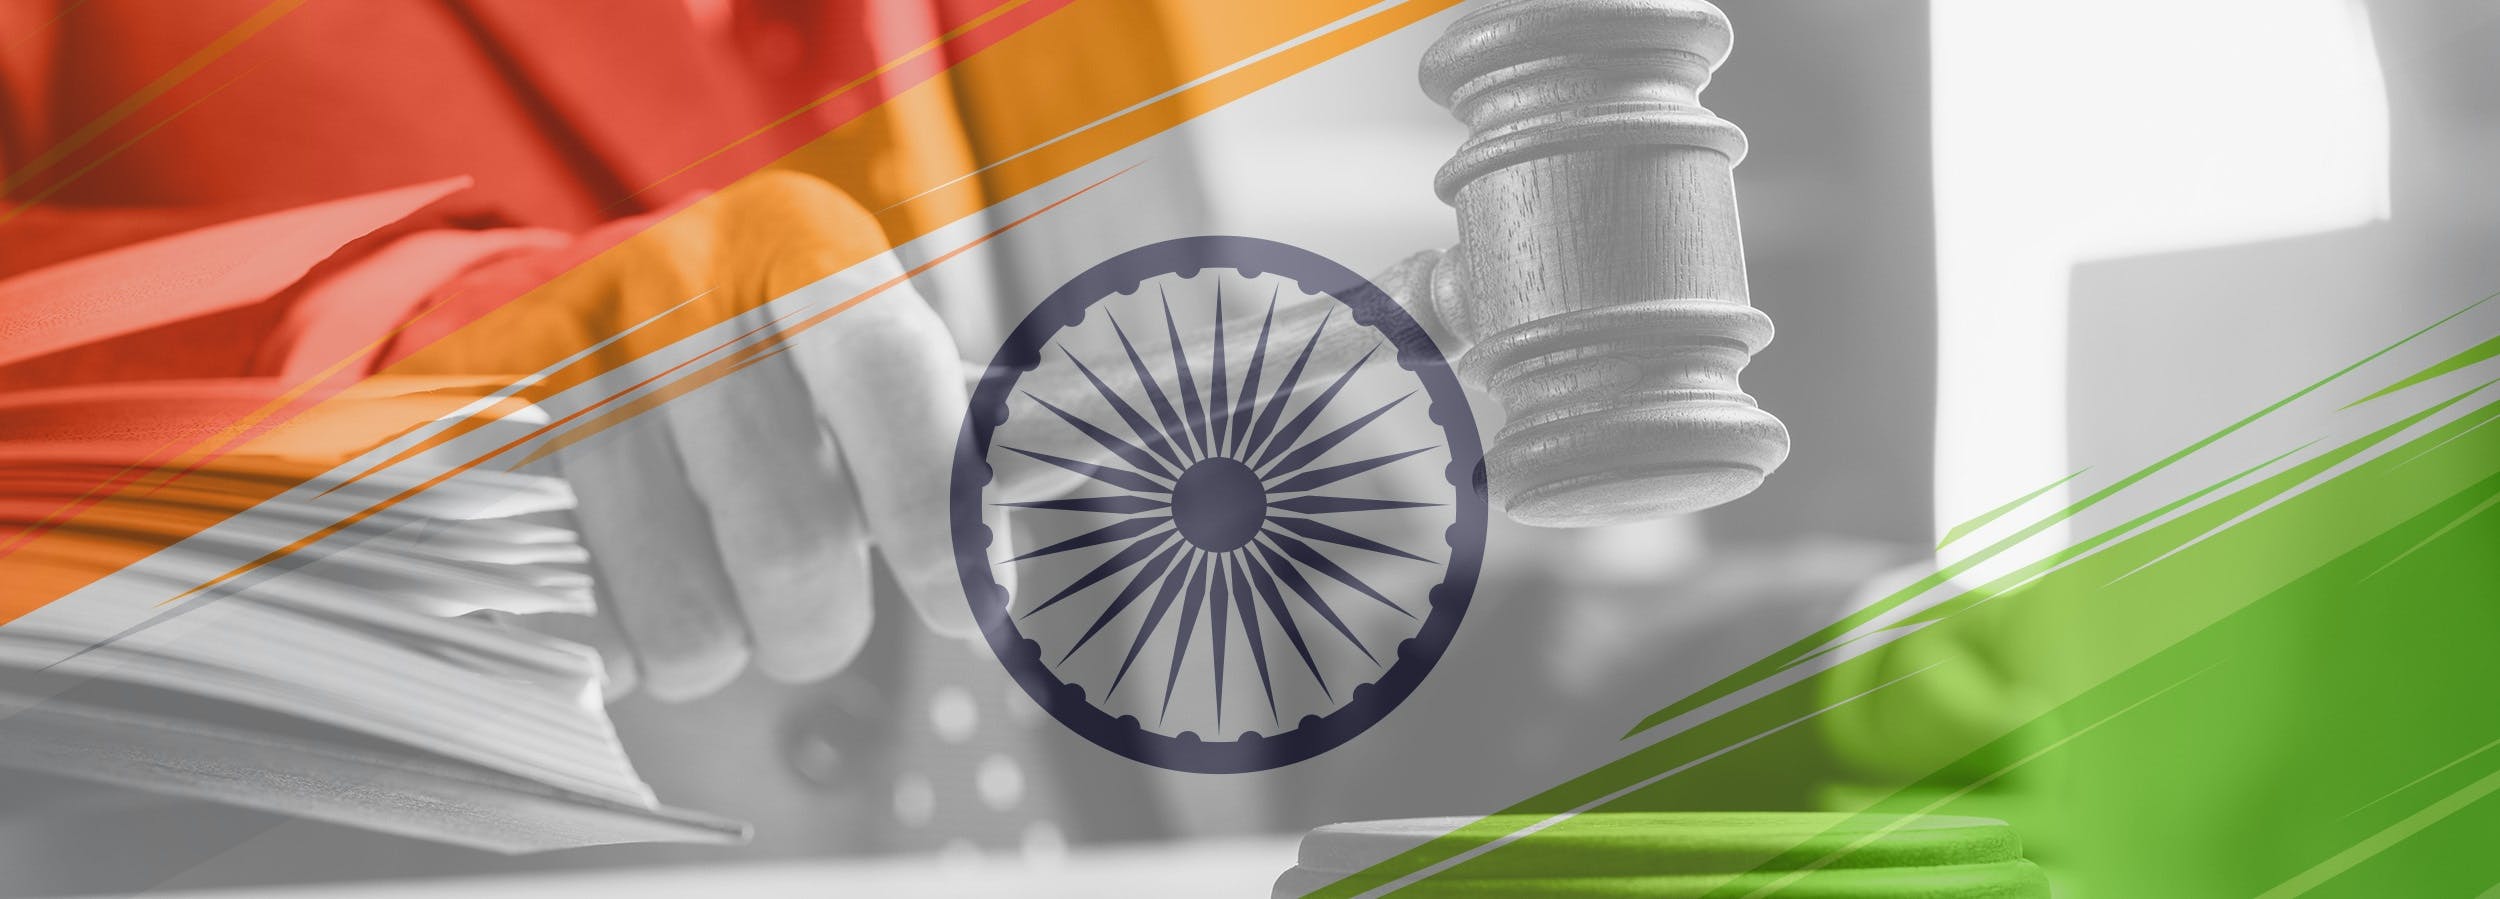 Pertaruhan situasi undang-undang india